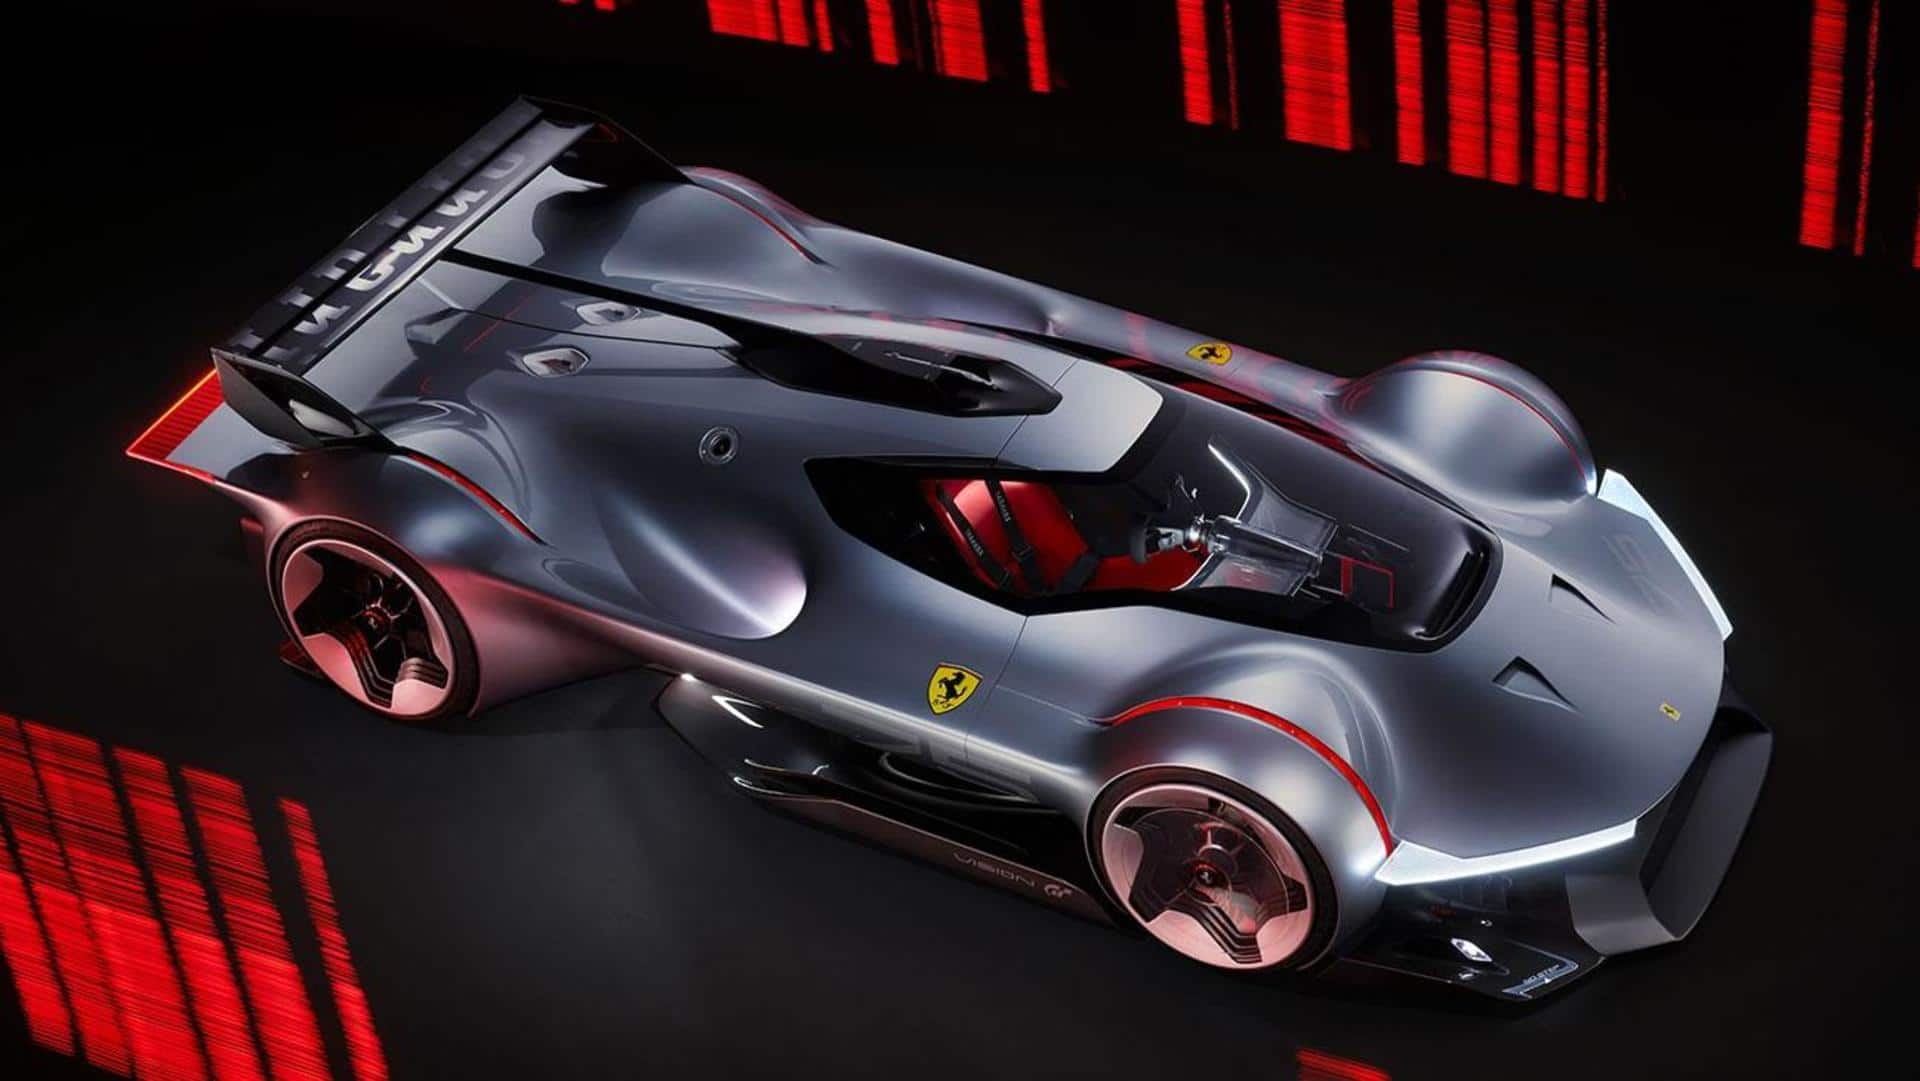 Ferrari Vision Gran Turismo concept, with 1,350hp powertrain, breaks cover